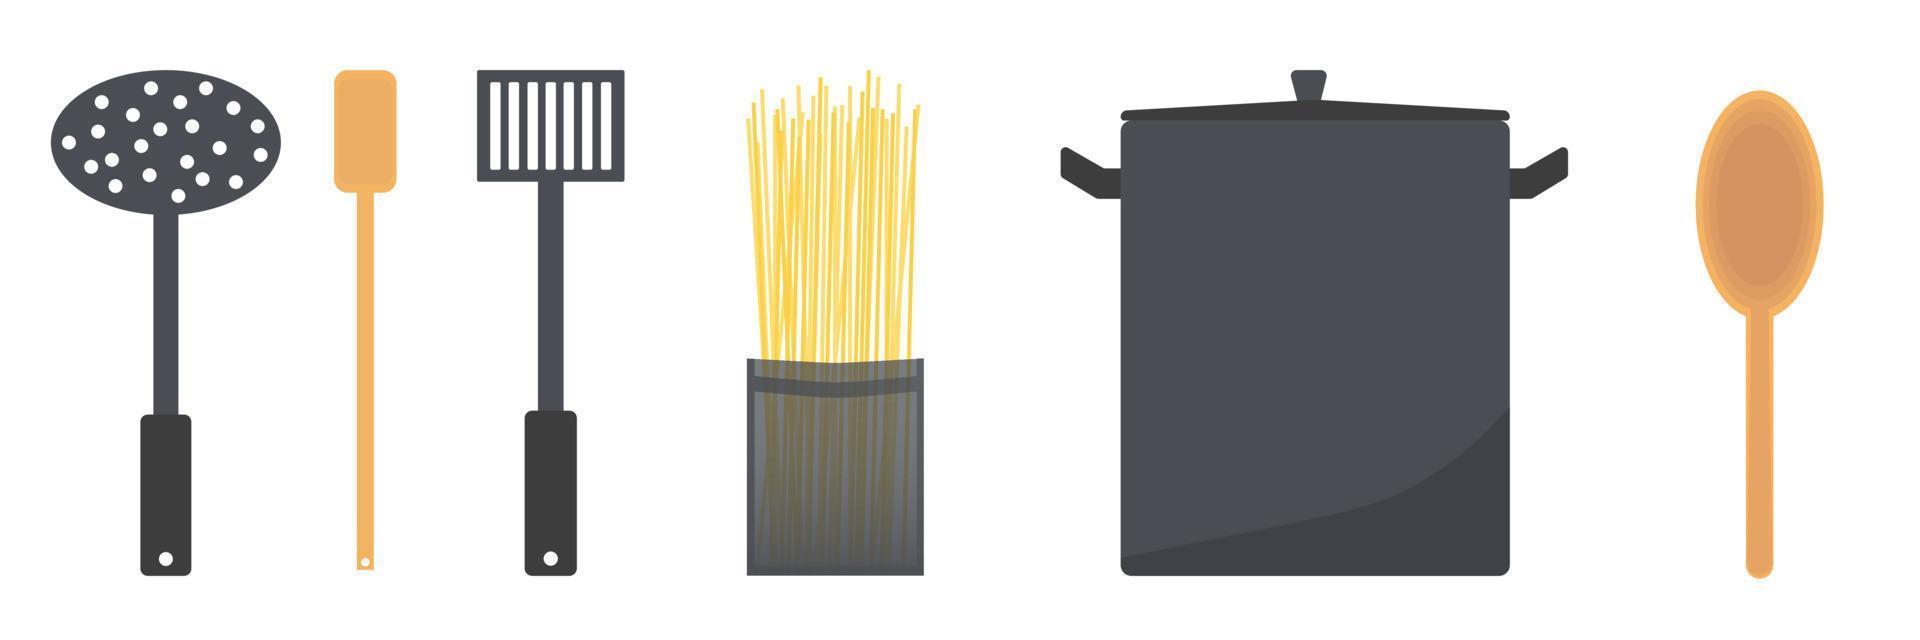 définir des ustensiles et des outils pour la cuisson des spaghettis illustration vectorielle plate vecteur